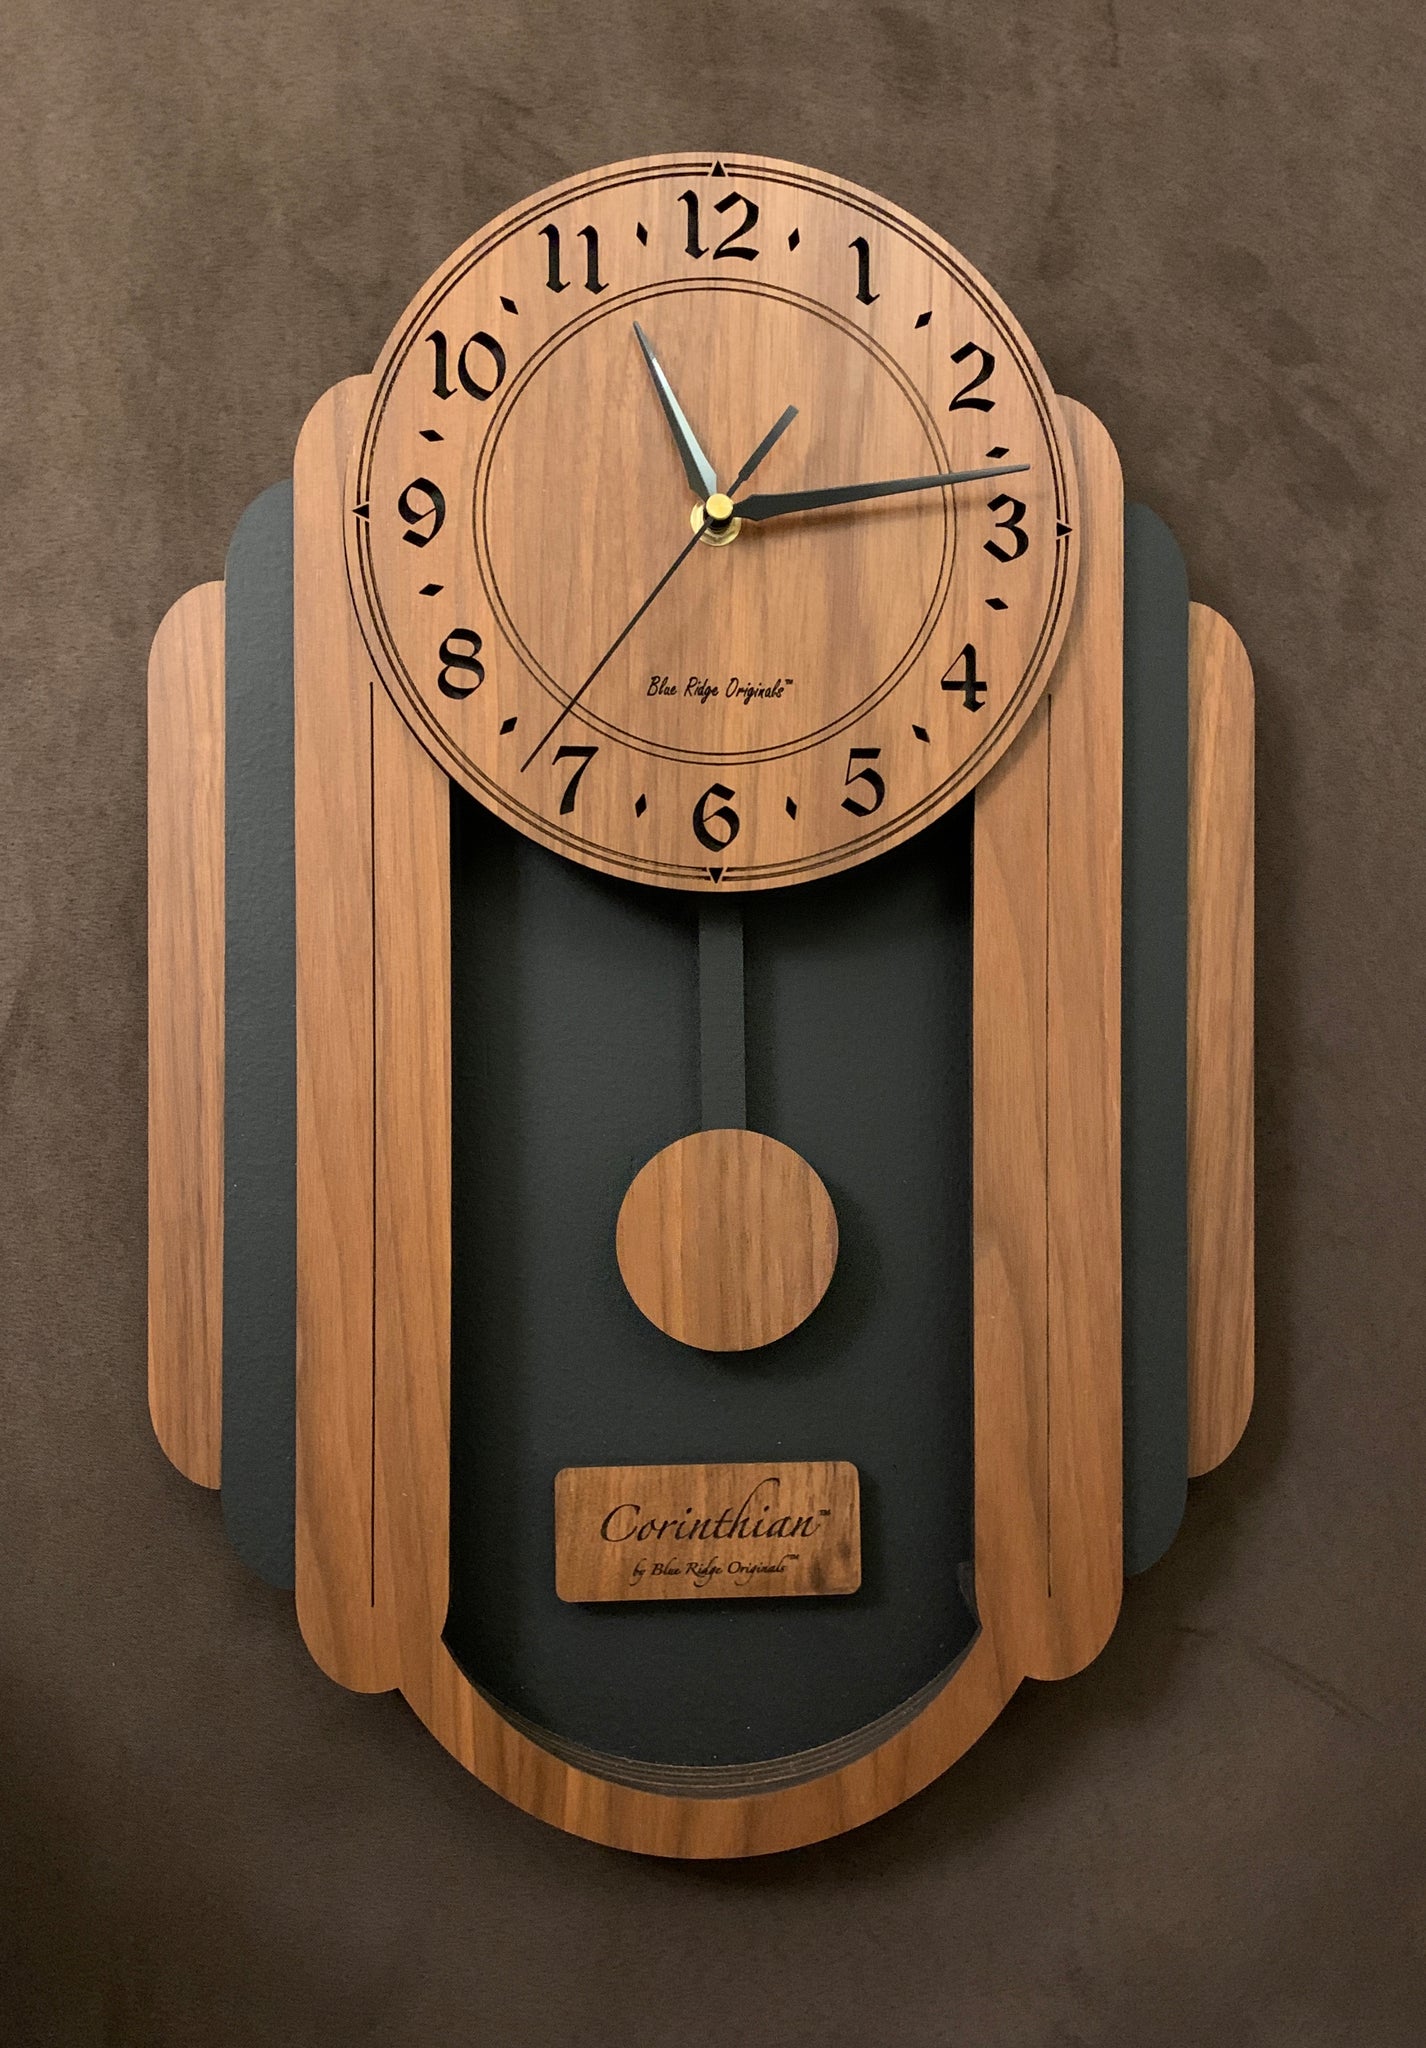 Kanon variabel Retentie Corinthian™ Pendulum Clock in Walnut – Blue Ridge Originals™